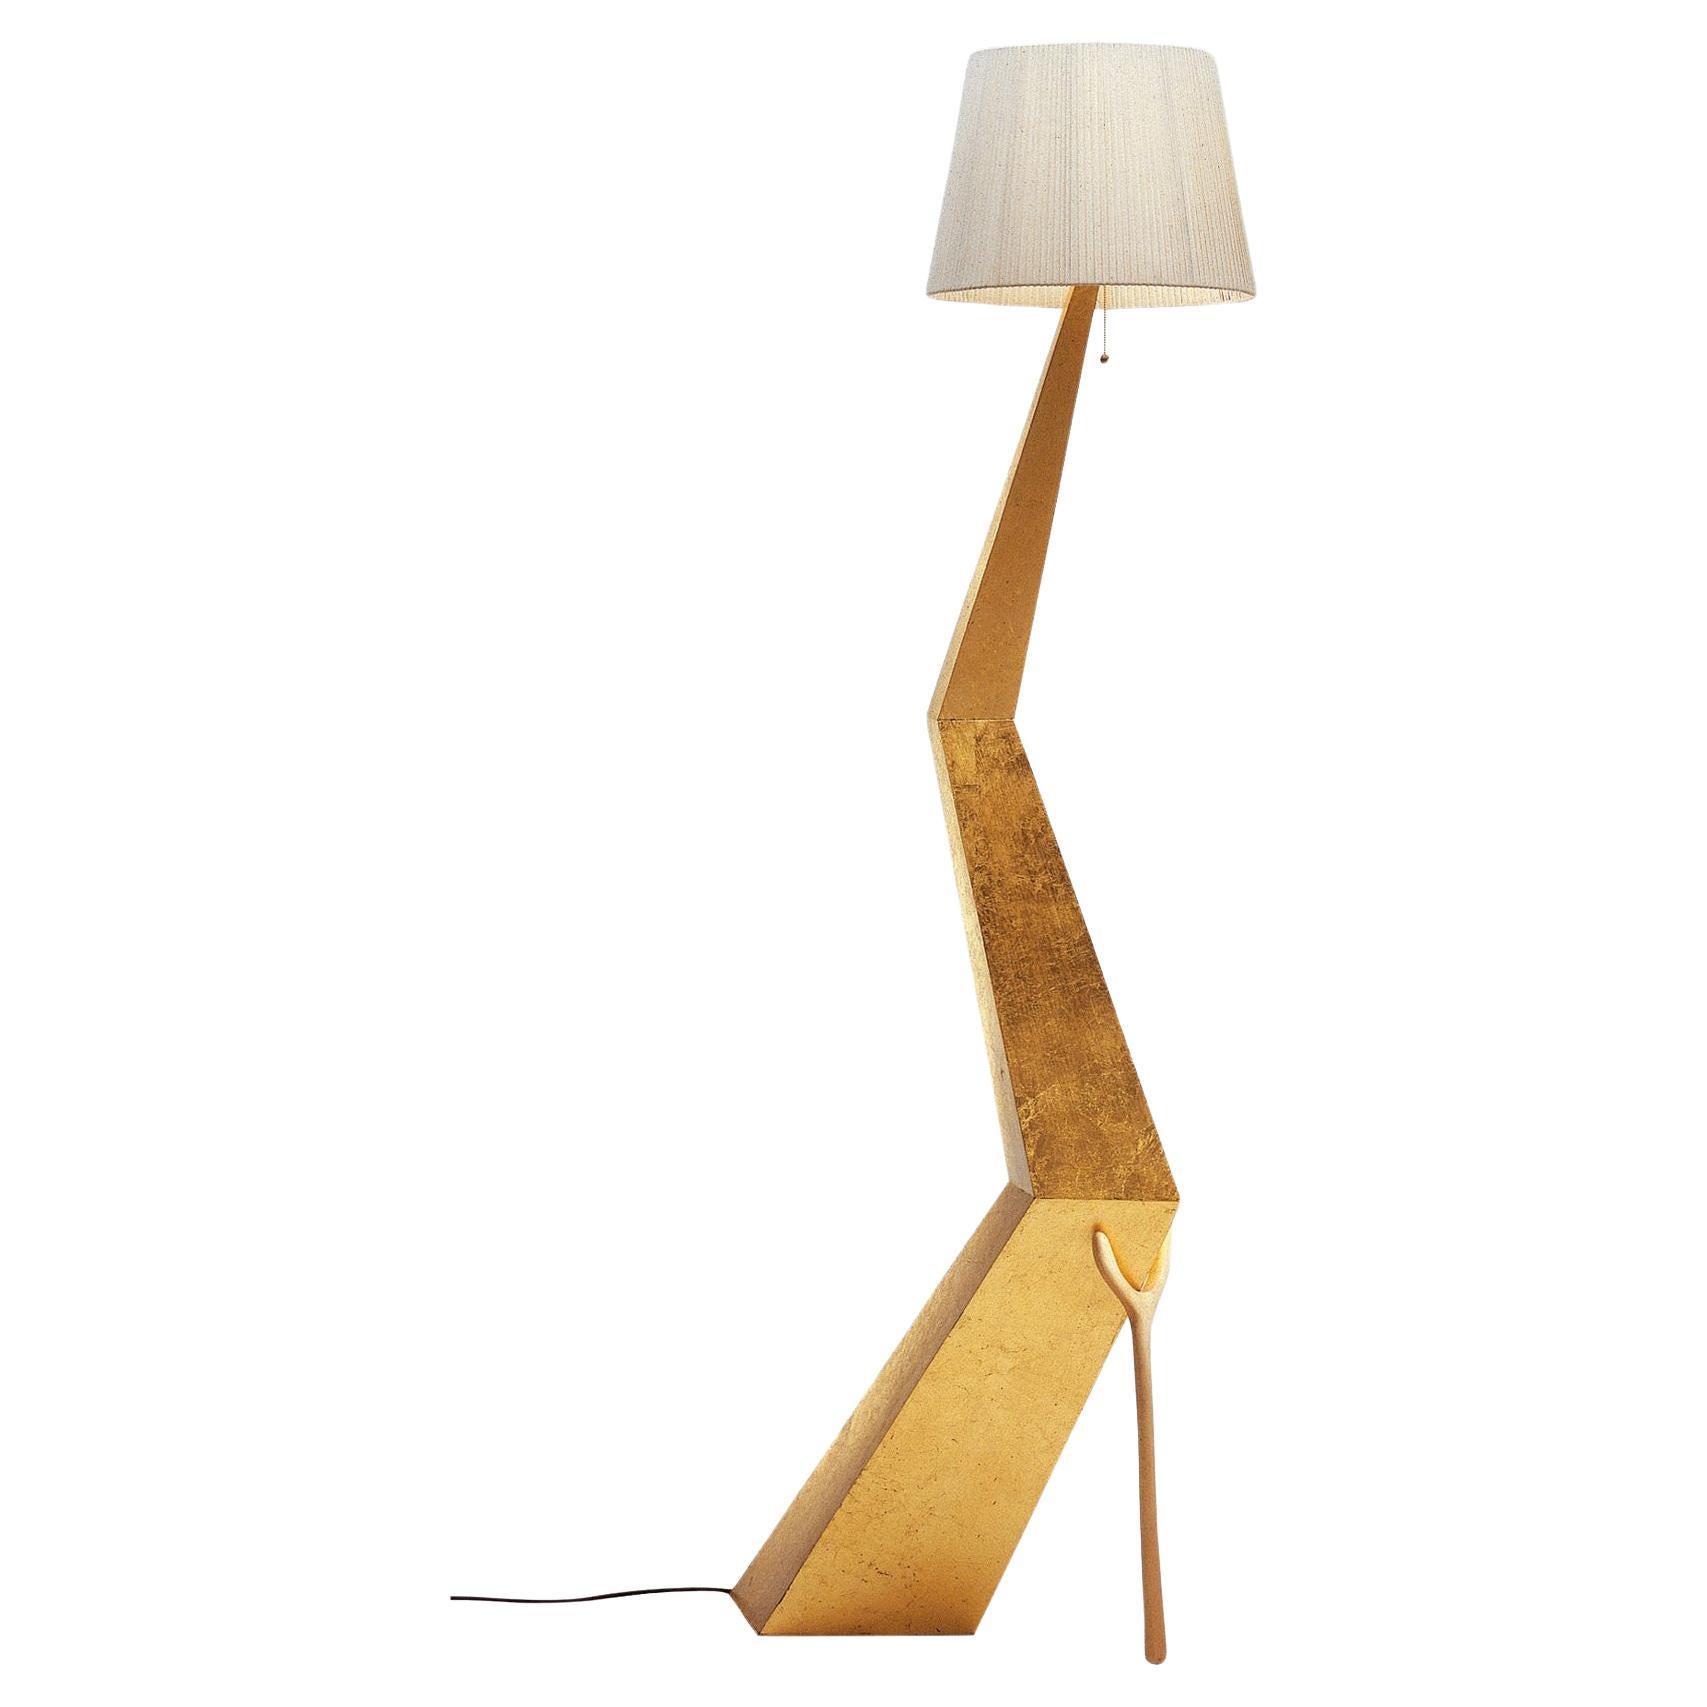 Satz von zwei Braceli-Lampen, entworfen von Salvador Dali, hergestellt von BD furniture in Barcelona.

Bracelli
Paneelstruktur mit versilberter Polyesterlackierung (Feines Blattgold) überzogen.
Lampenschirm aus elfenbeinfarbener Baumwolle und